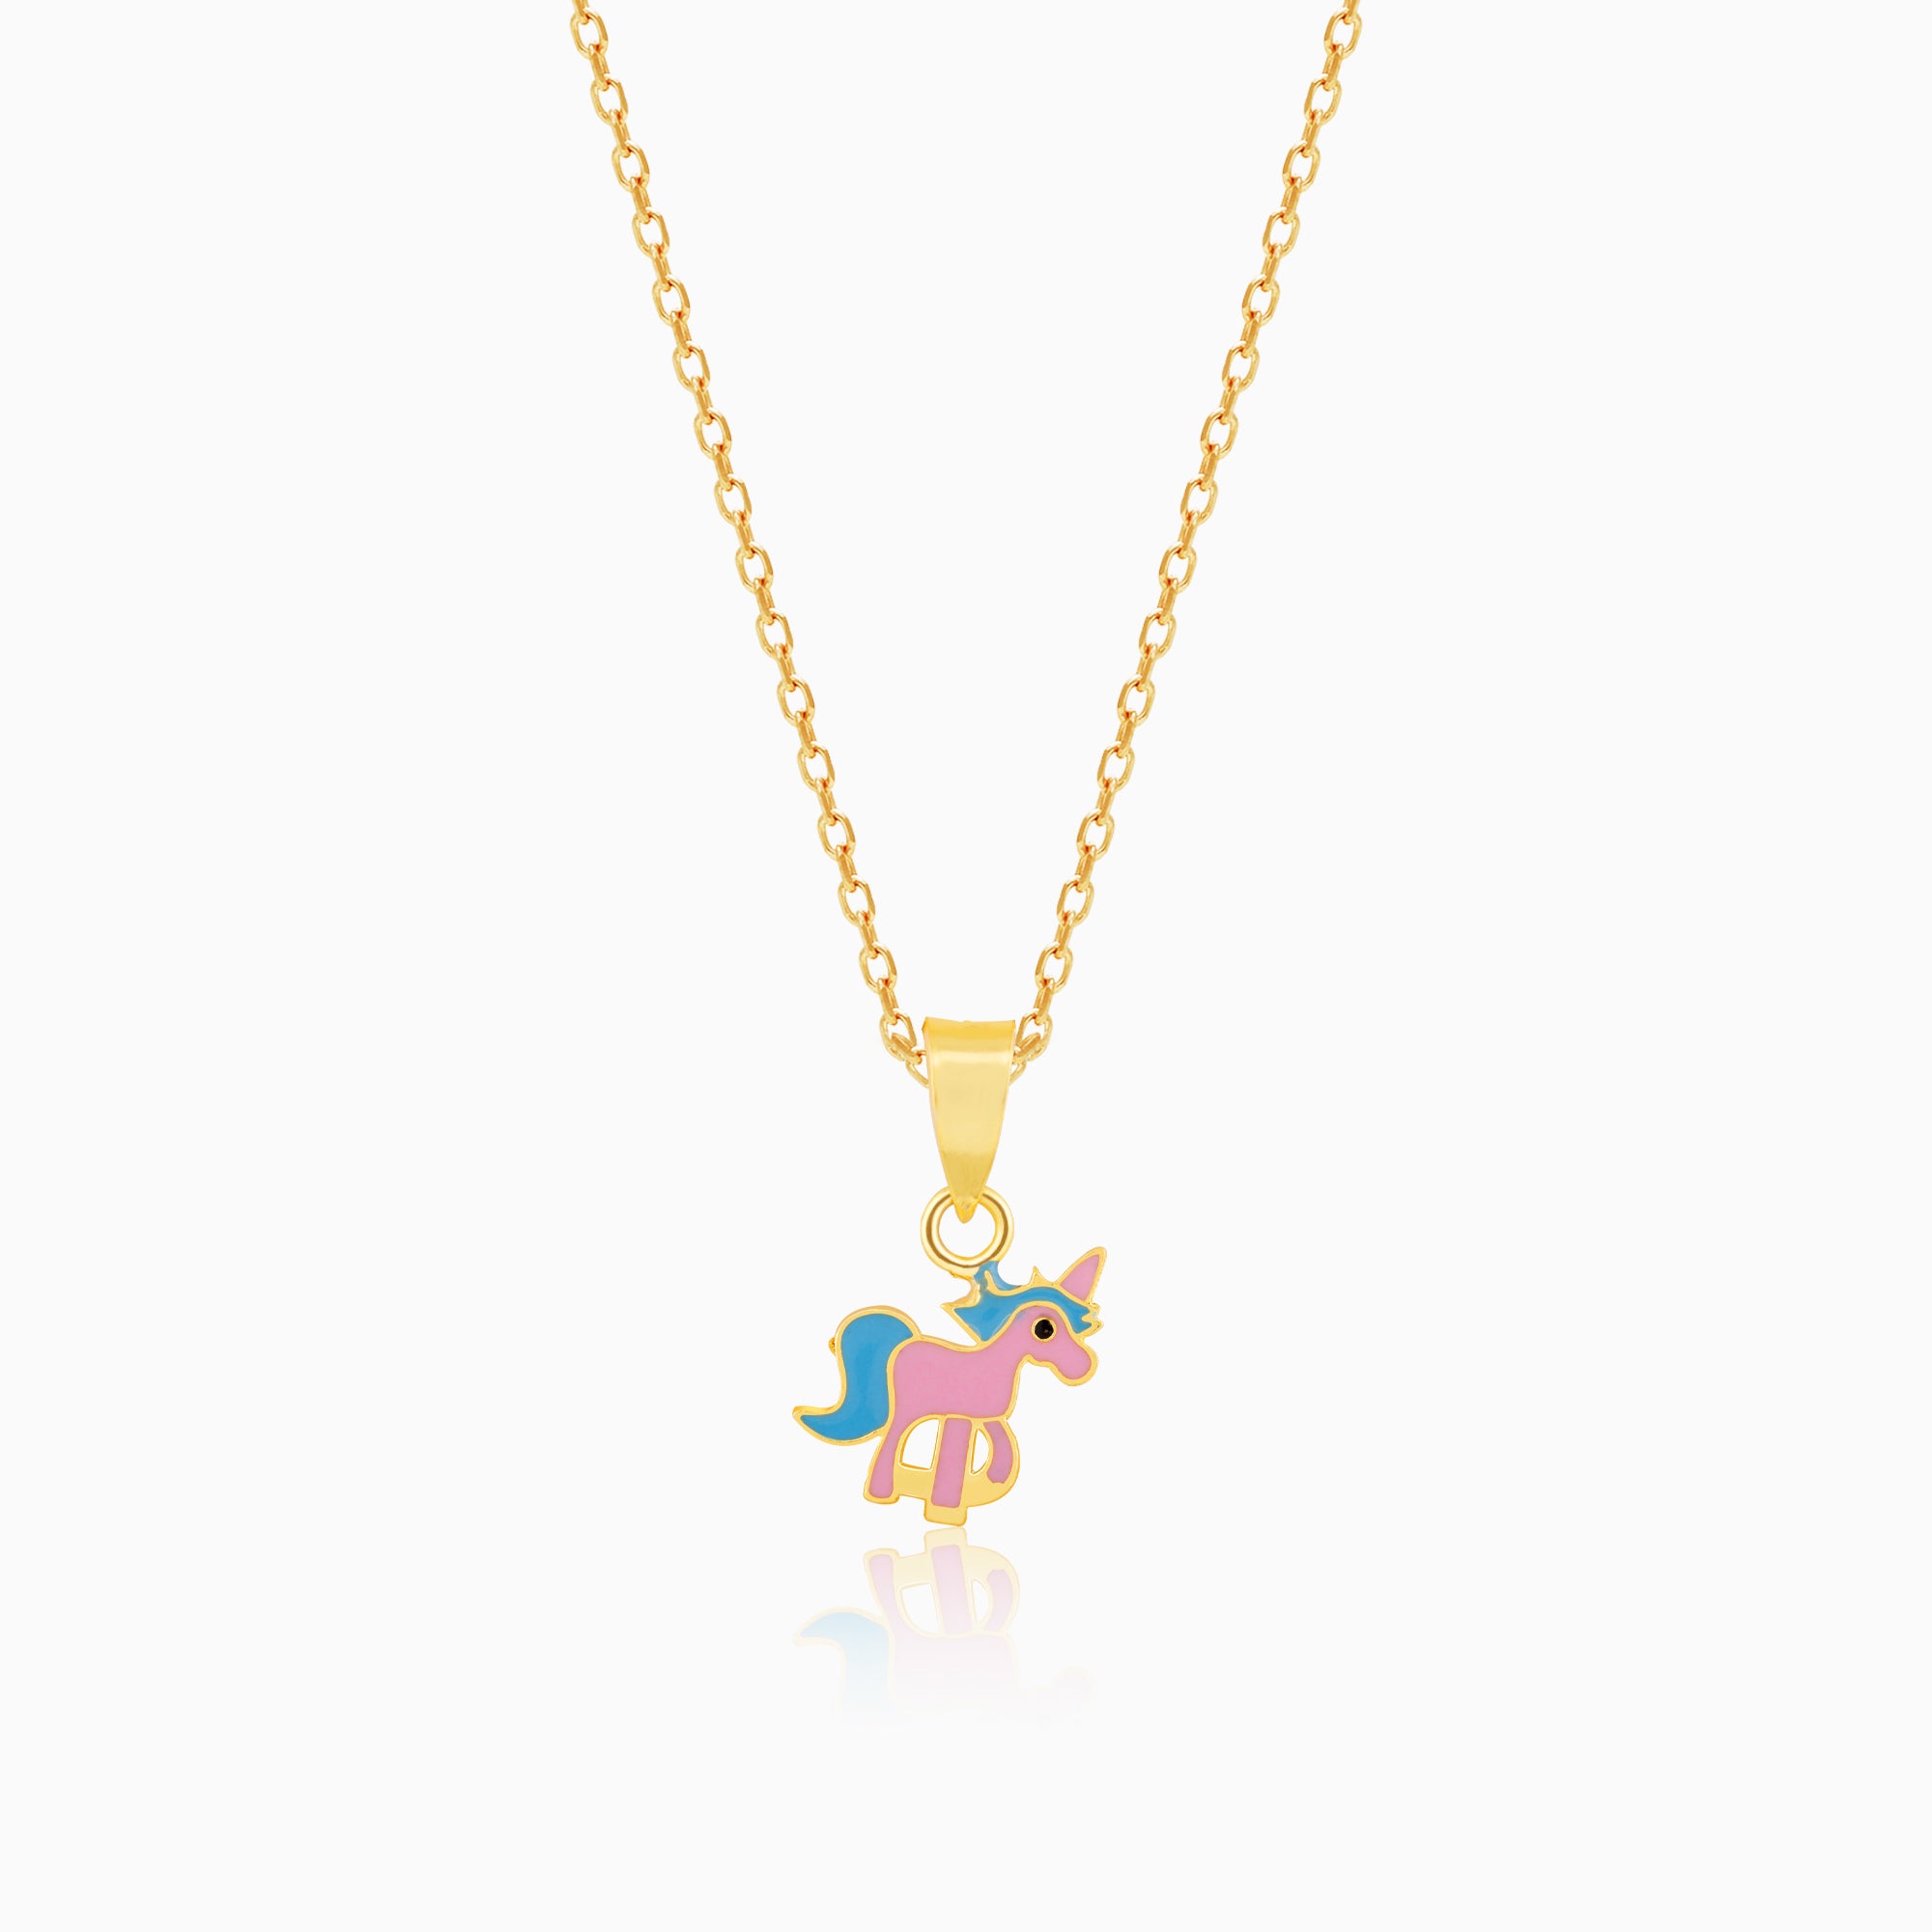 Mini Night Owl Necklace for Girls Boys Kids Women Lady Quartz Pocket Watch  Chain | eBay